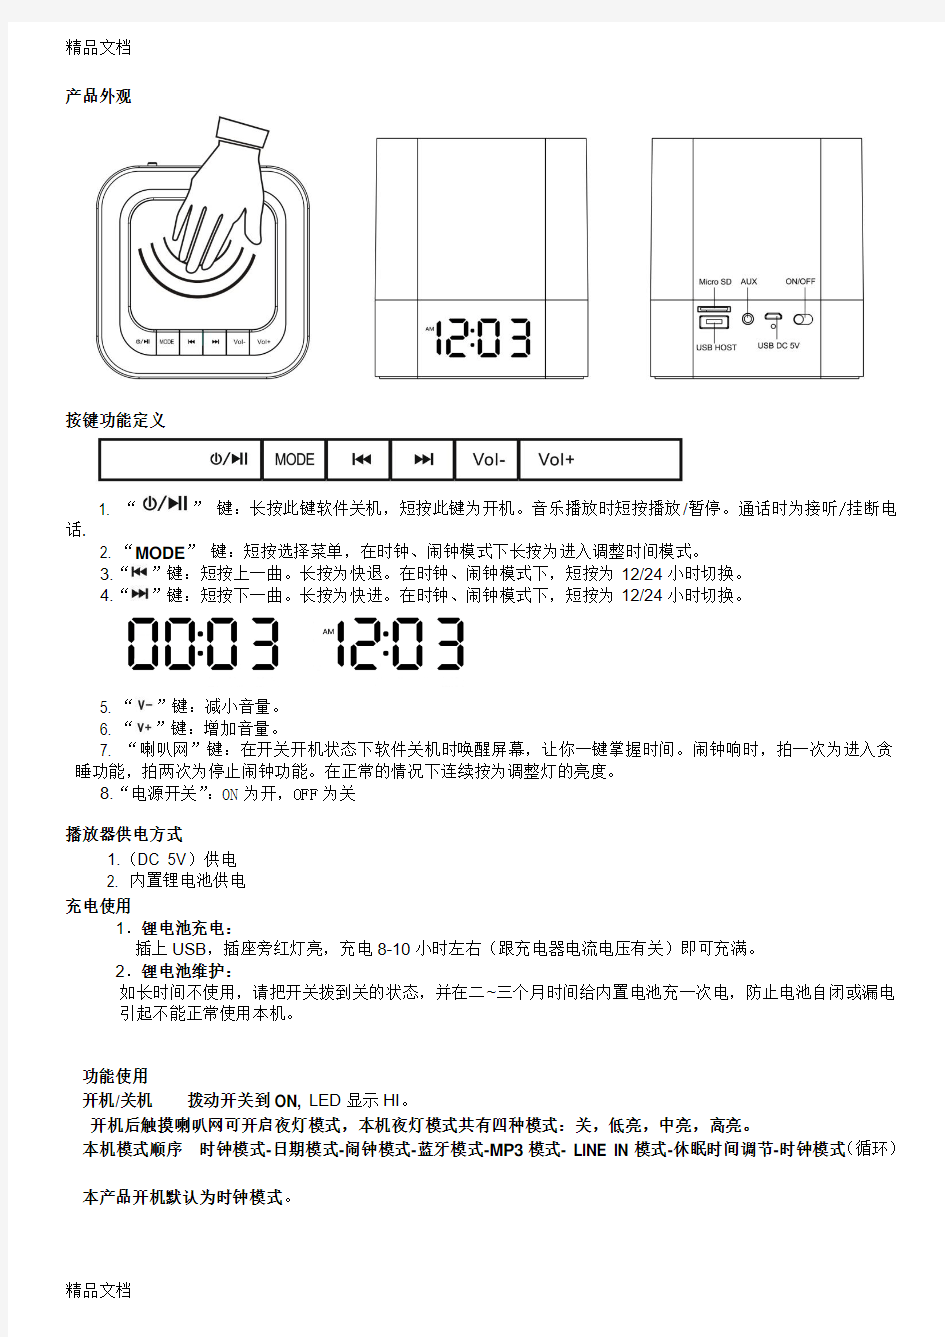 最新DY28蓝牙中文说明书 台灯音箱资料